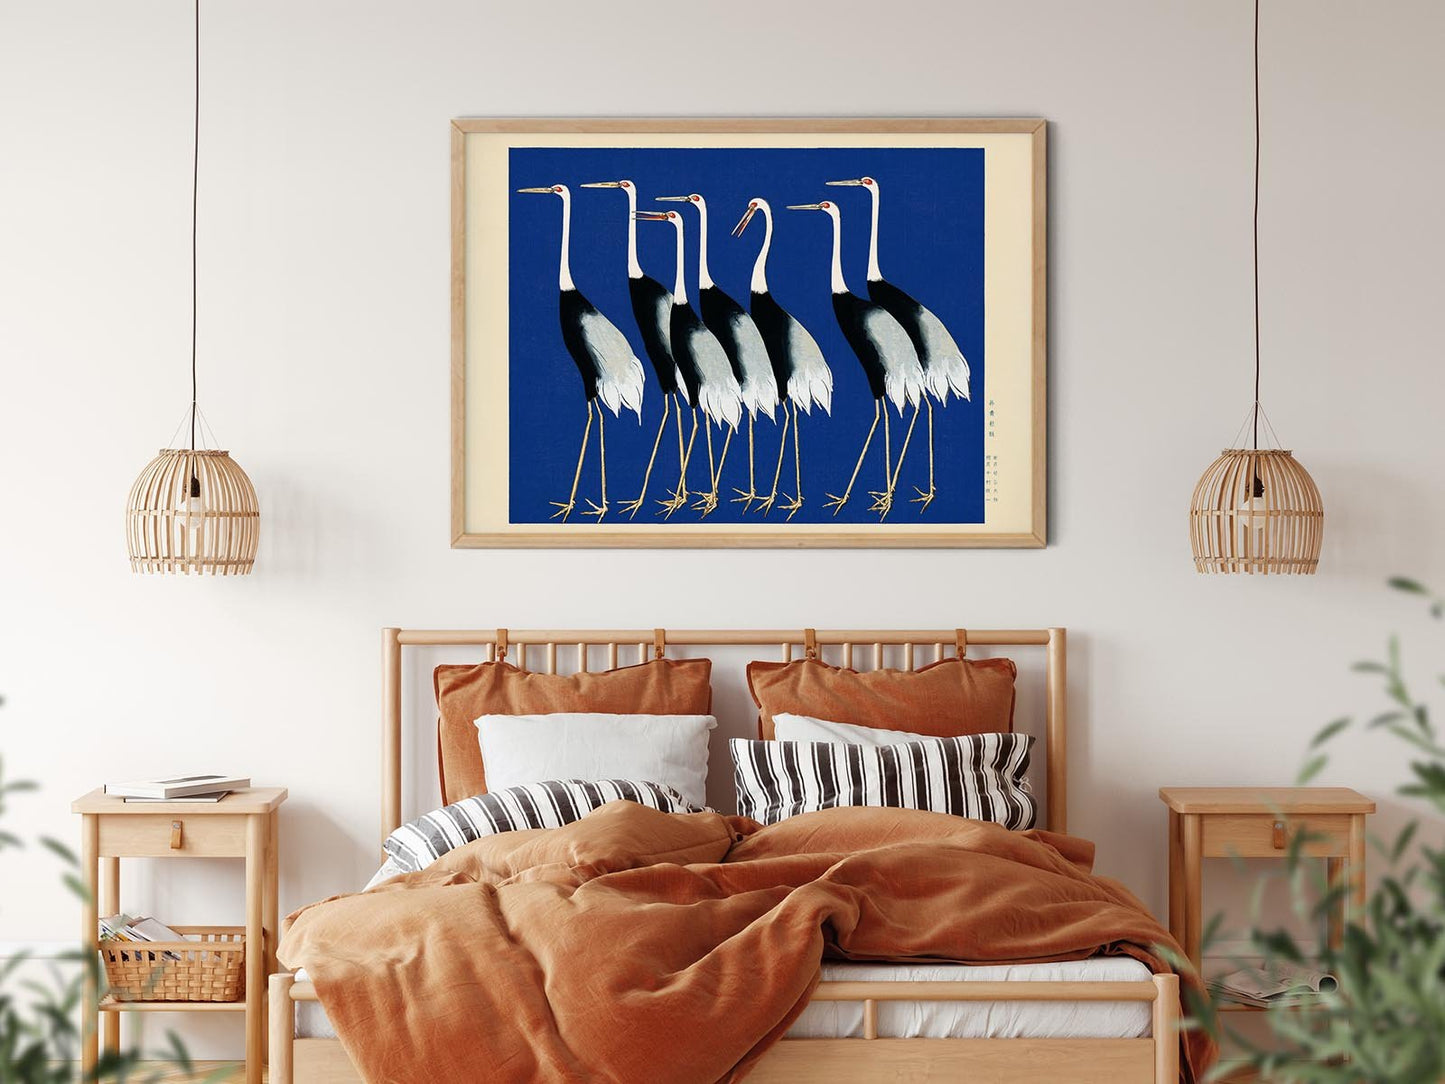 7 Birds by Korin in Blue